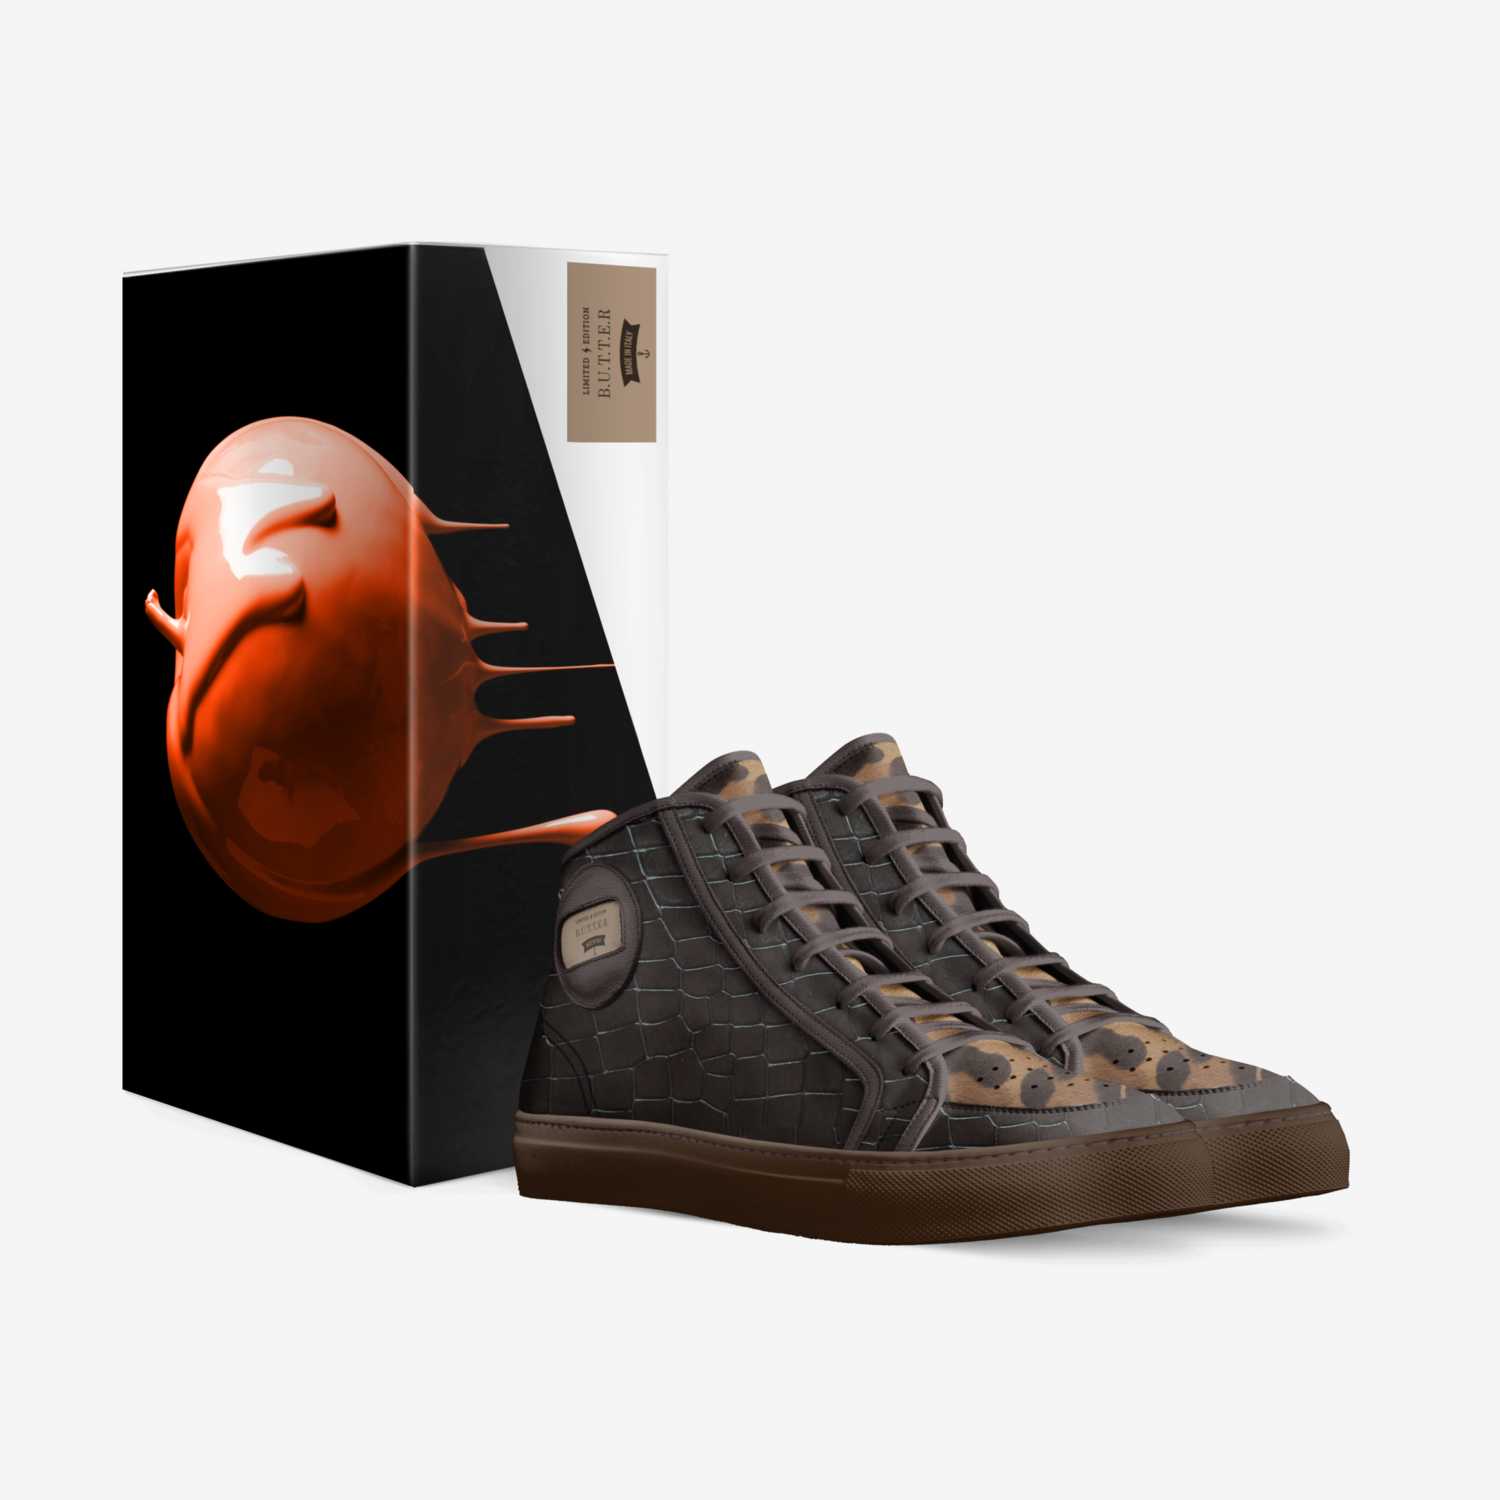 B.U.T.T.E.R custom made in Italy shoes by Flo Banks | Box view